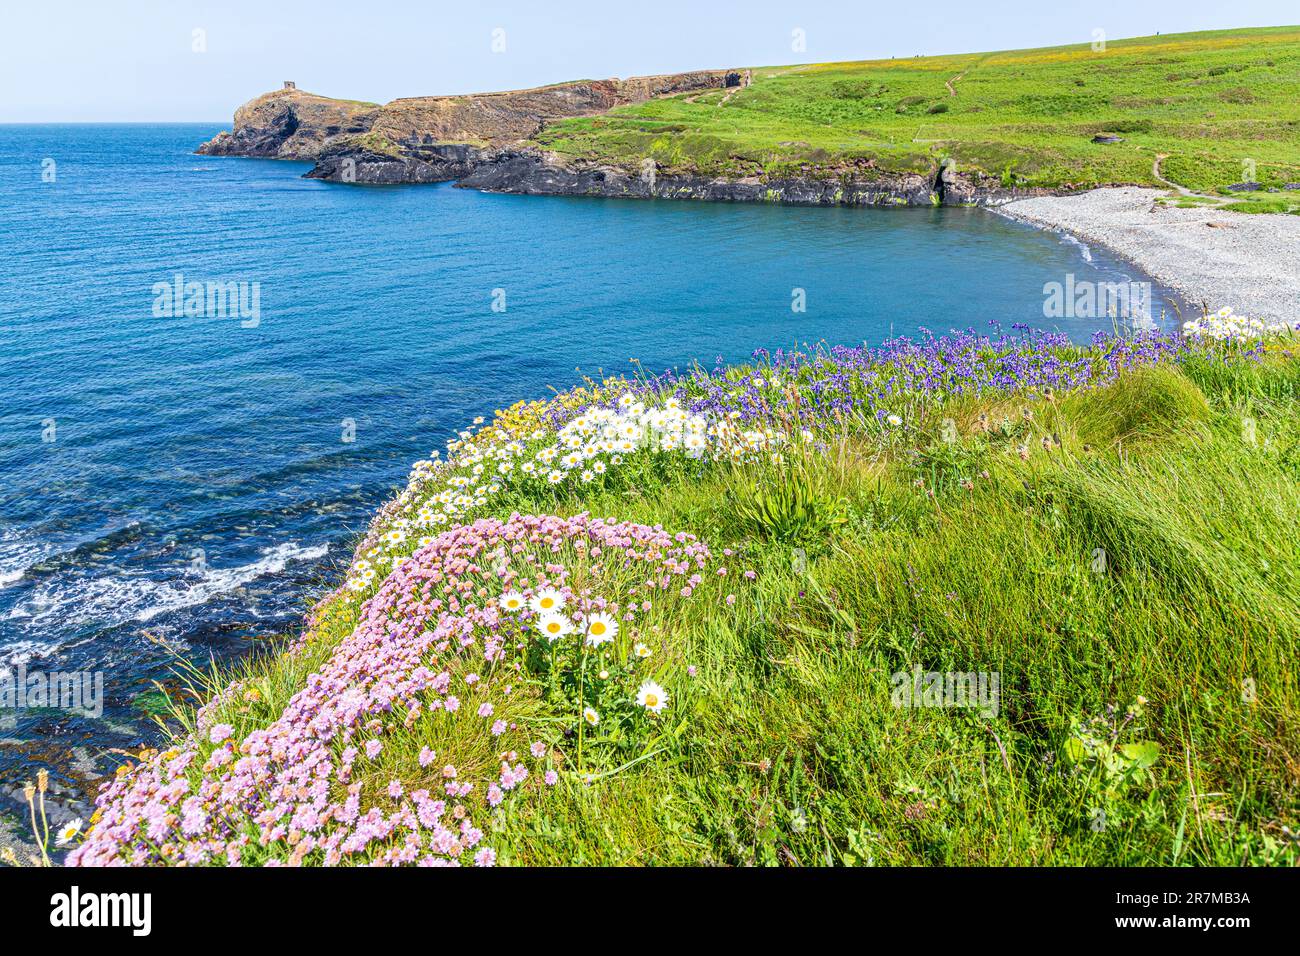 Des roses de mer (thrift), des pâquerettes et des cloches de bœuf fleurissent sur les falaises d'Abereiddy Bay, Pembrokeshire, pays de Galles, Royaume-Uni. Banque D'Images